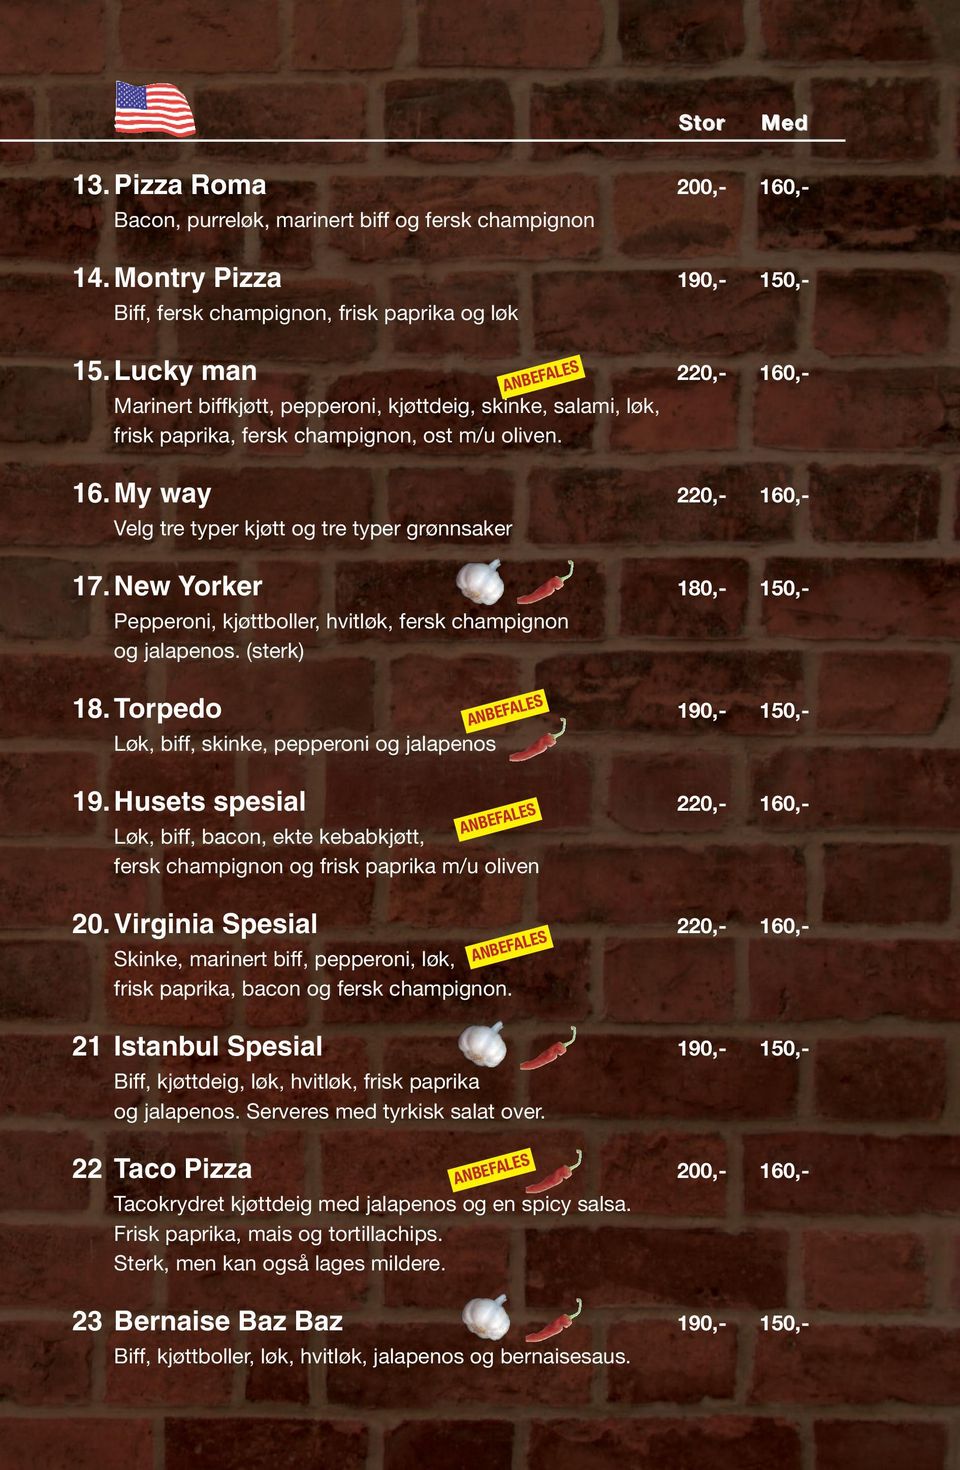 New Yorker 180,- 150,- Pepperoni, kjøttboller, hvitløk, fersk champignon og jalapenos. (sterk) 18. Torpedo 190,- 150,- Løk, biff, skinke, pepperoni og jalapenos 19.